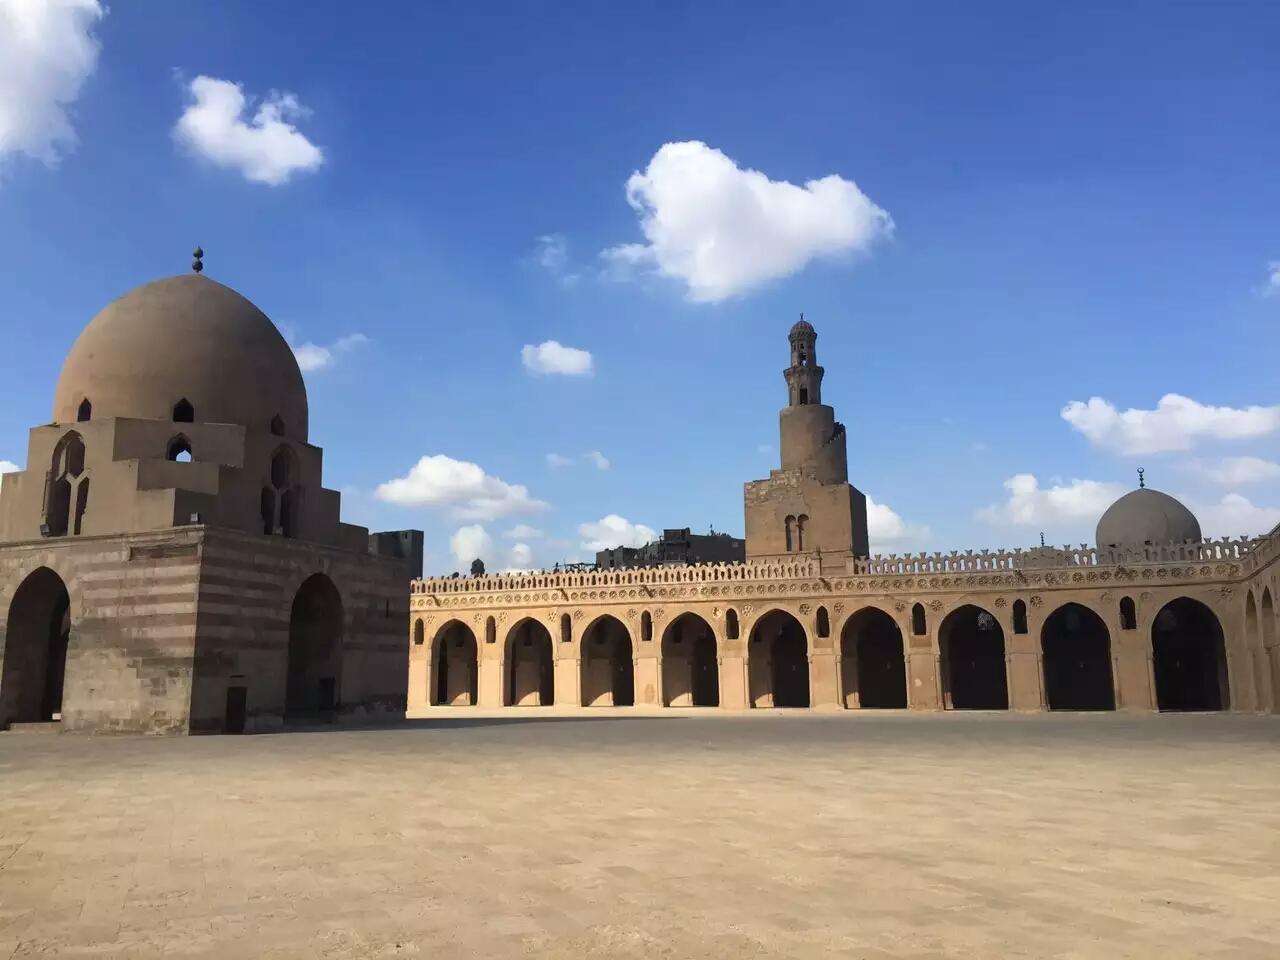 建筑宏伟并且很有特色 历史悠久的埃及开罗清真寺